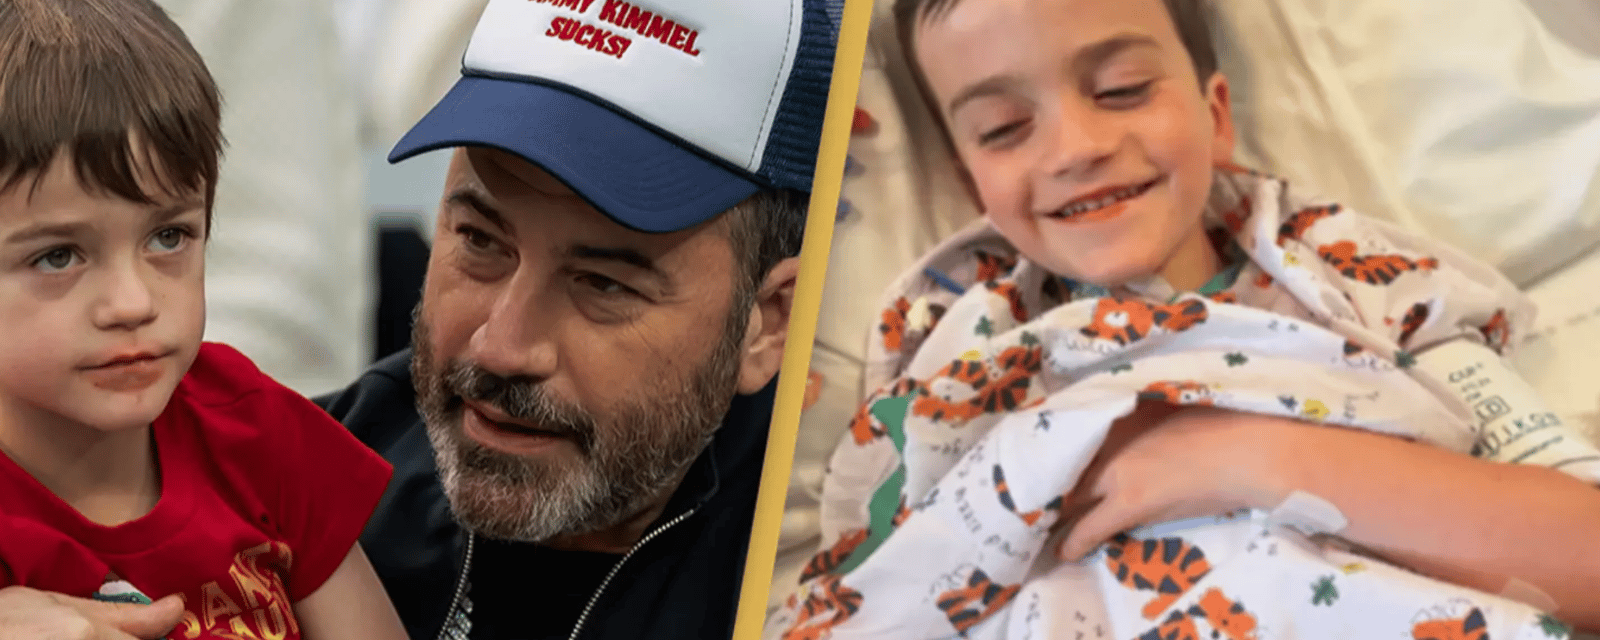 Le garçon de Jimmy Kimmel a dû subir une troisième opération à coeur ouvert.